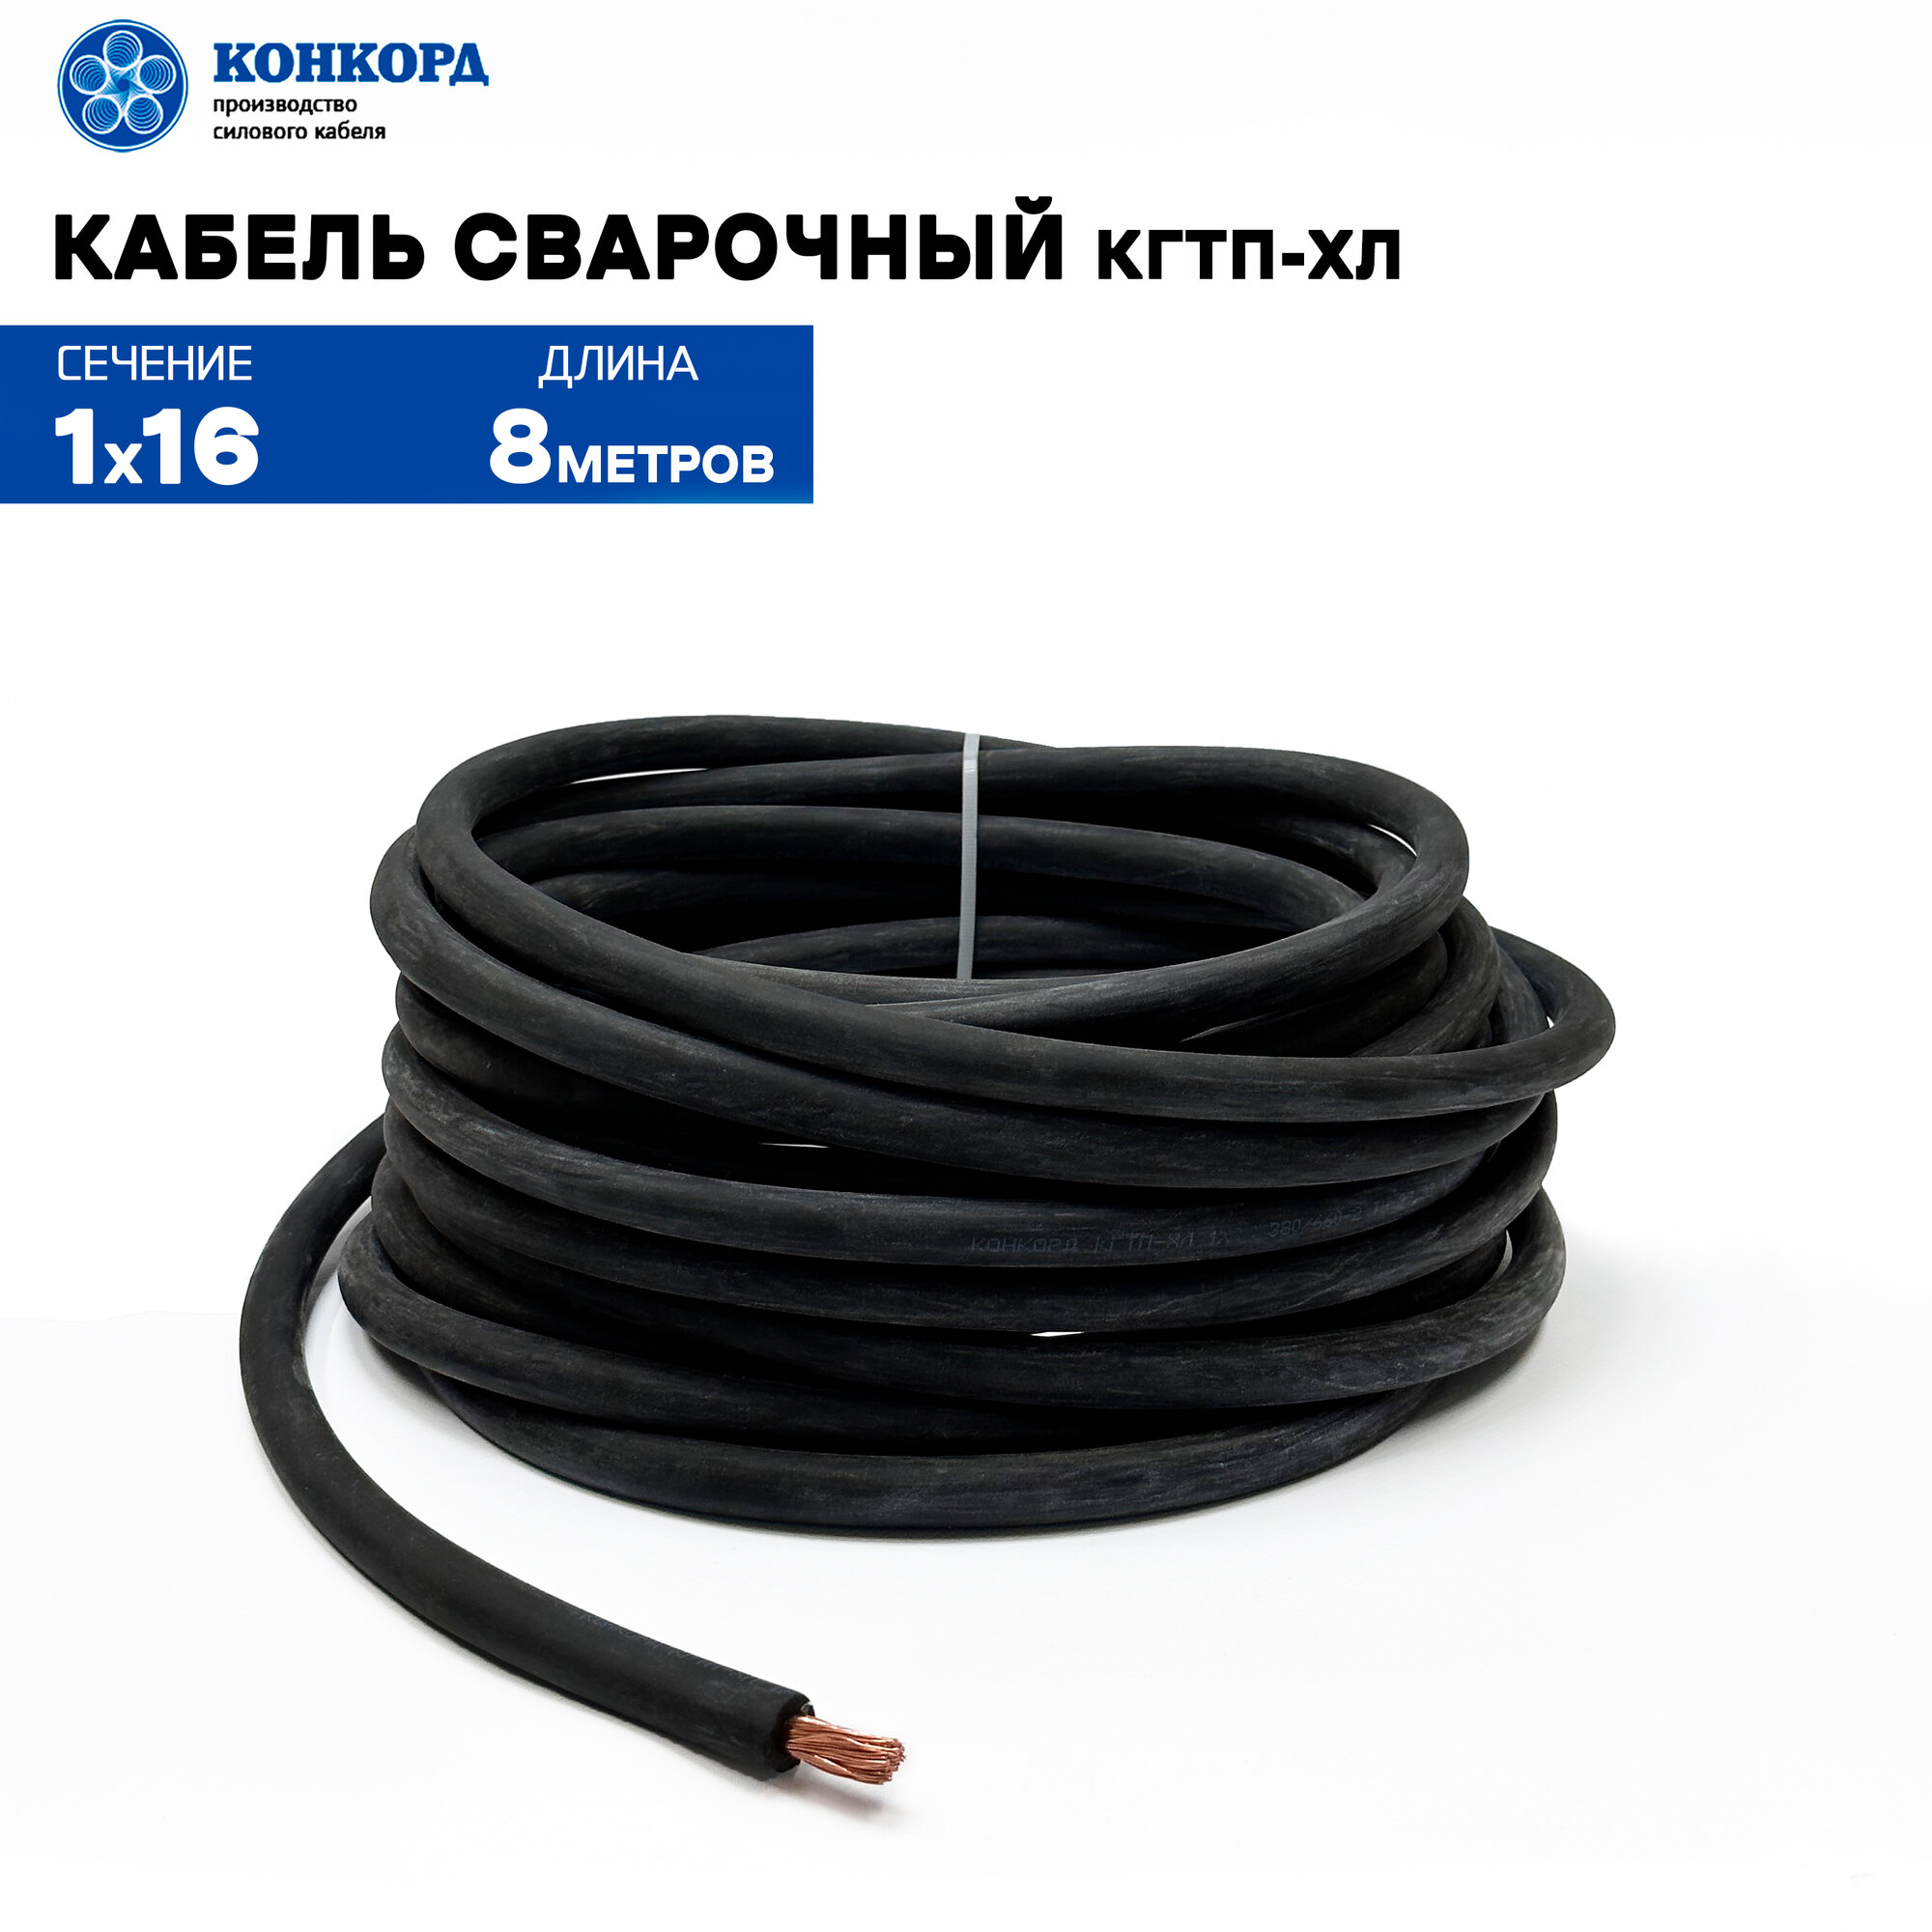 Сварочный кабель КГтп-ХЛ 16кв. мм 8 метров.